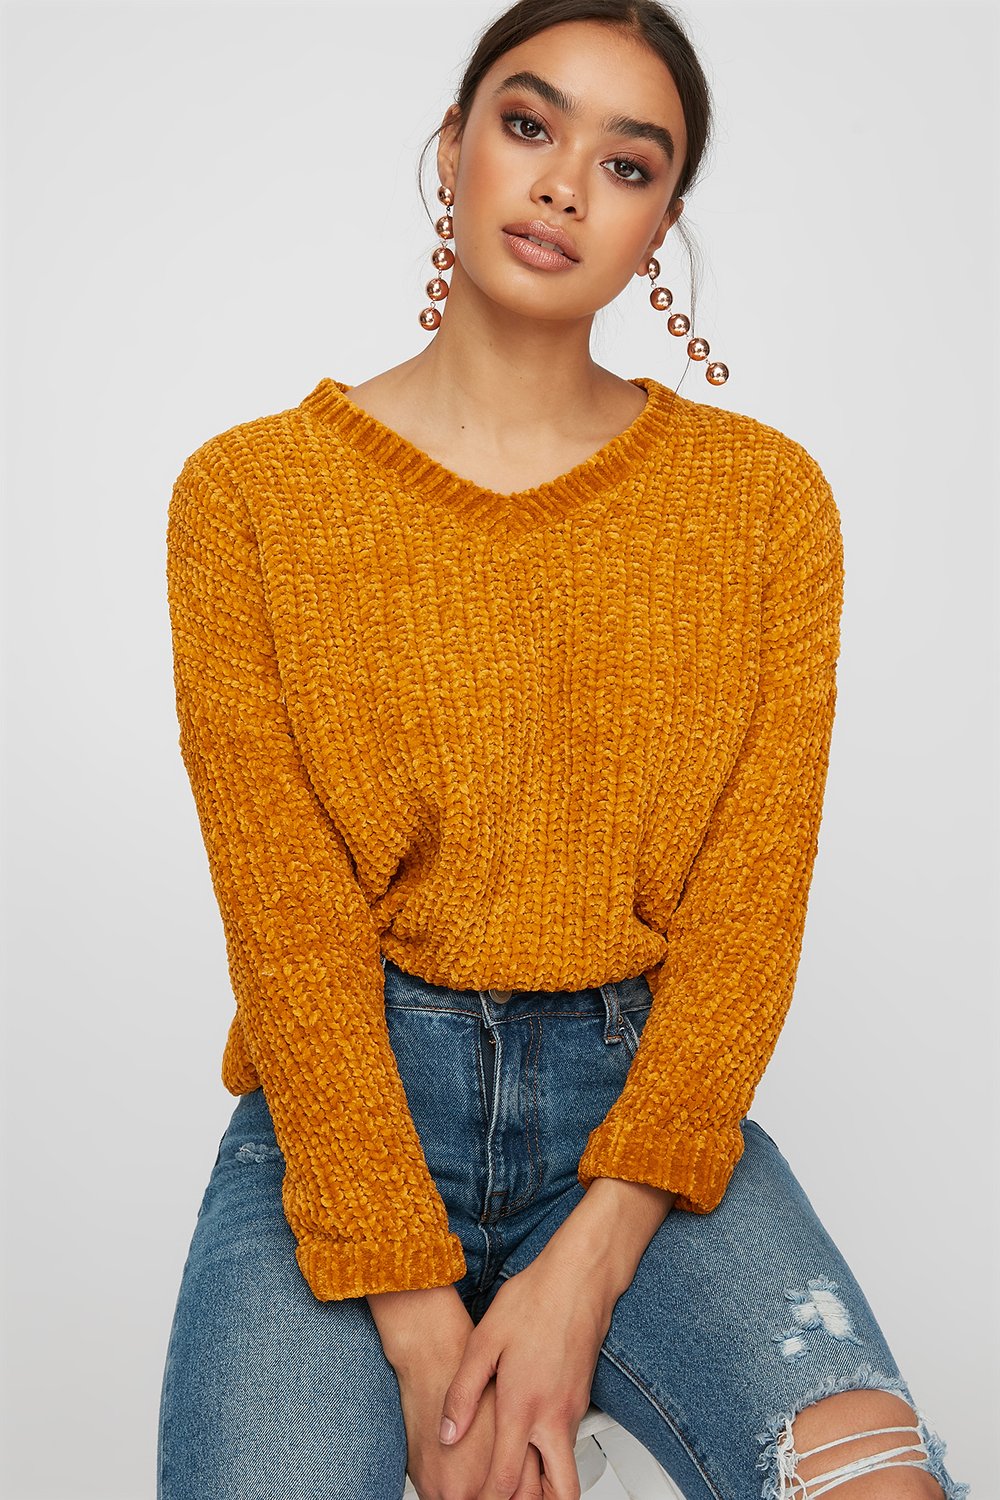 soft knit sweater